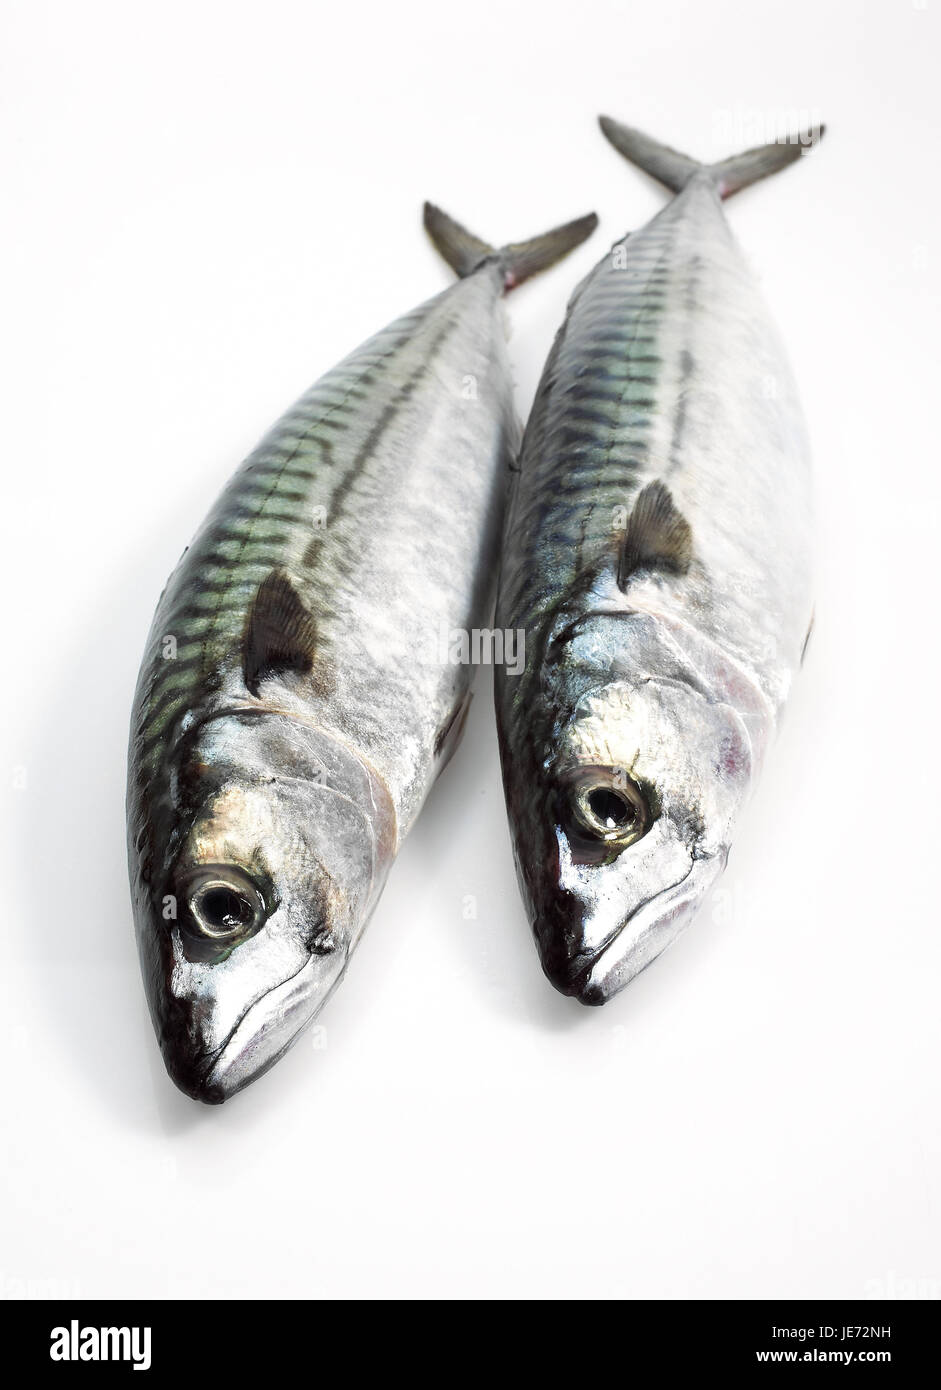 Makrelen, Scomber Scombrus, frischen Fisch, weißer Hintergrund, Stockfoto